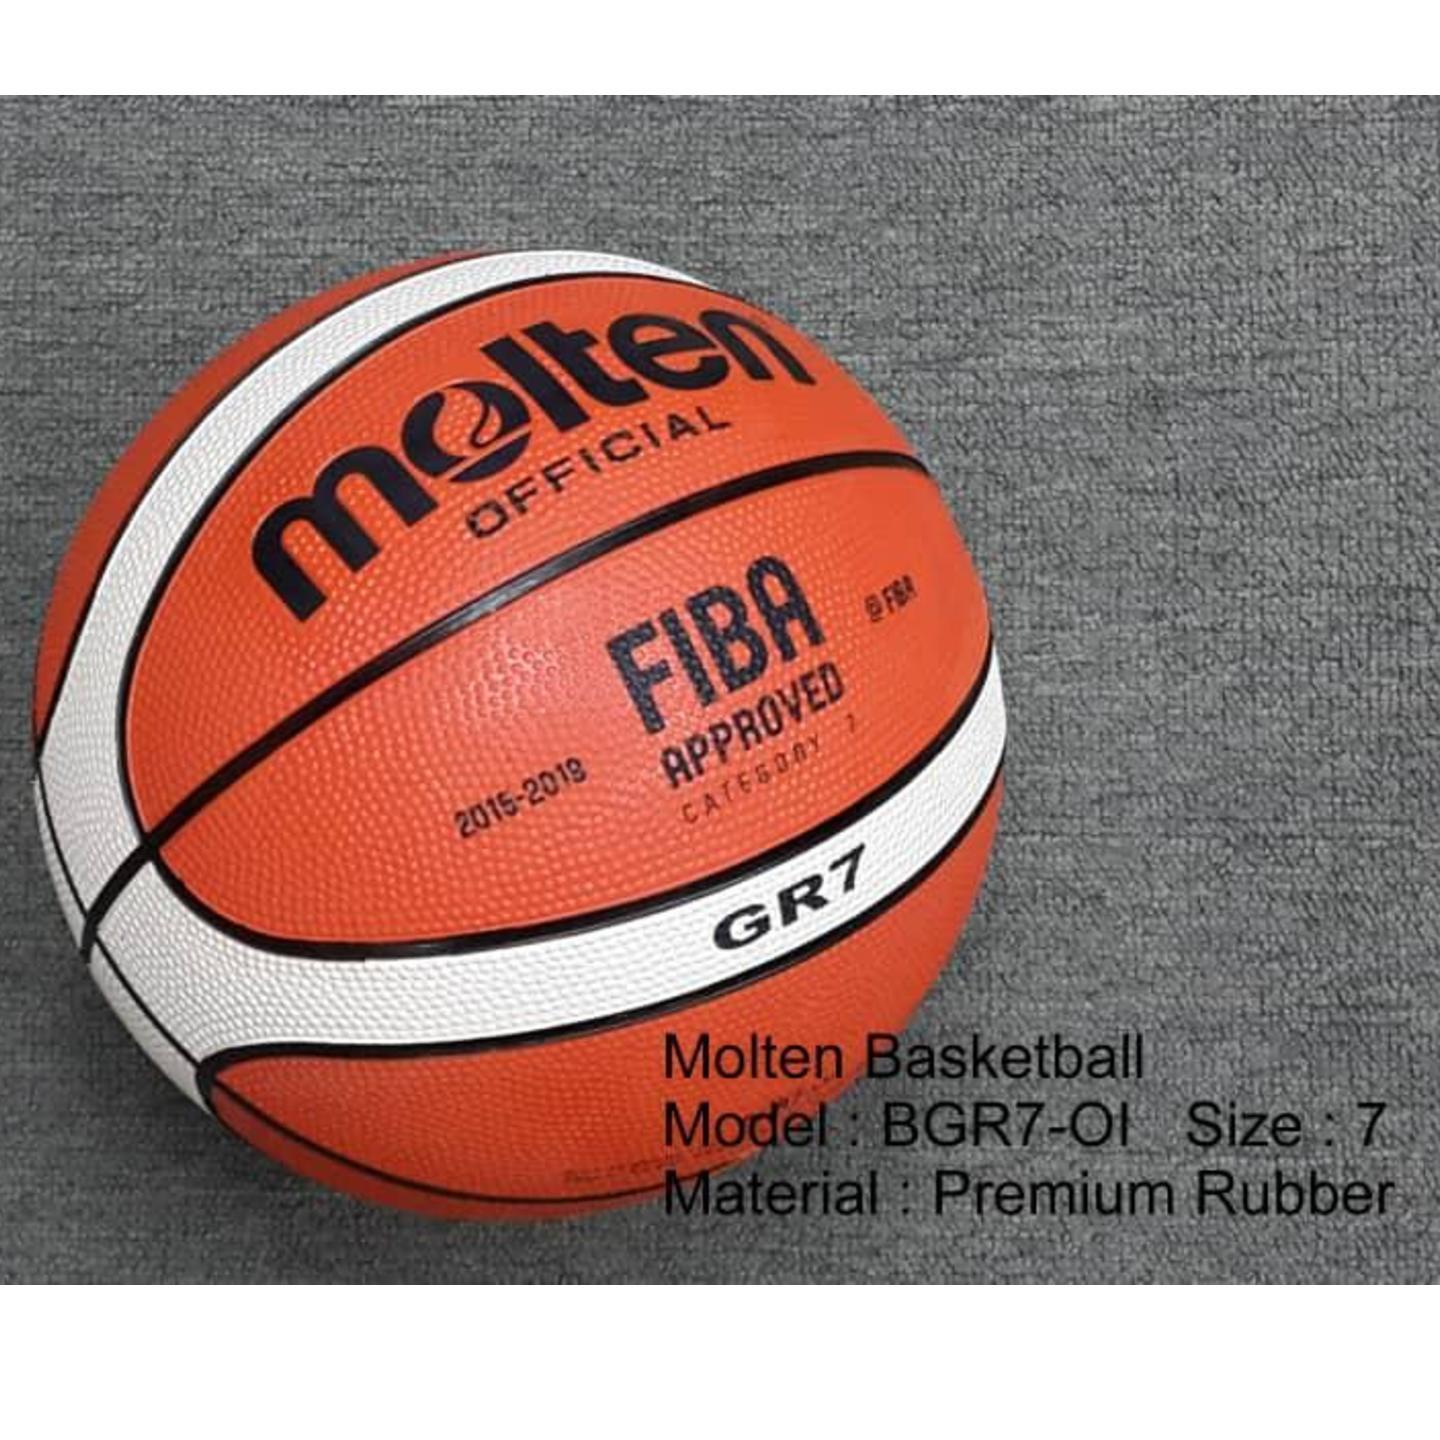 Molten Basketball Size 7